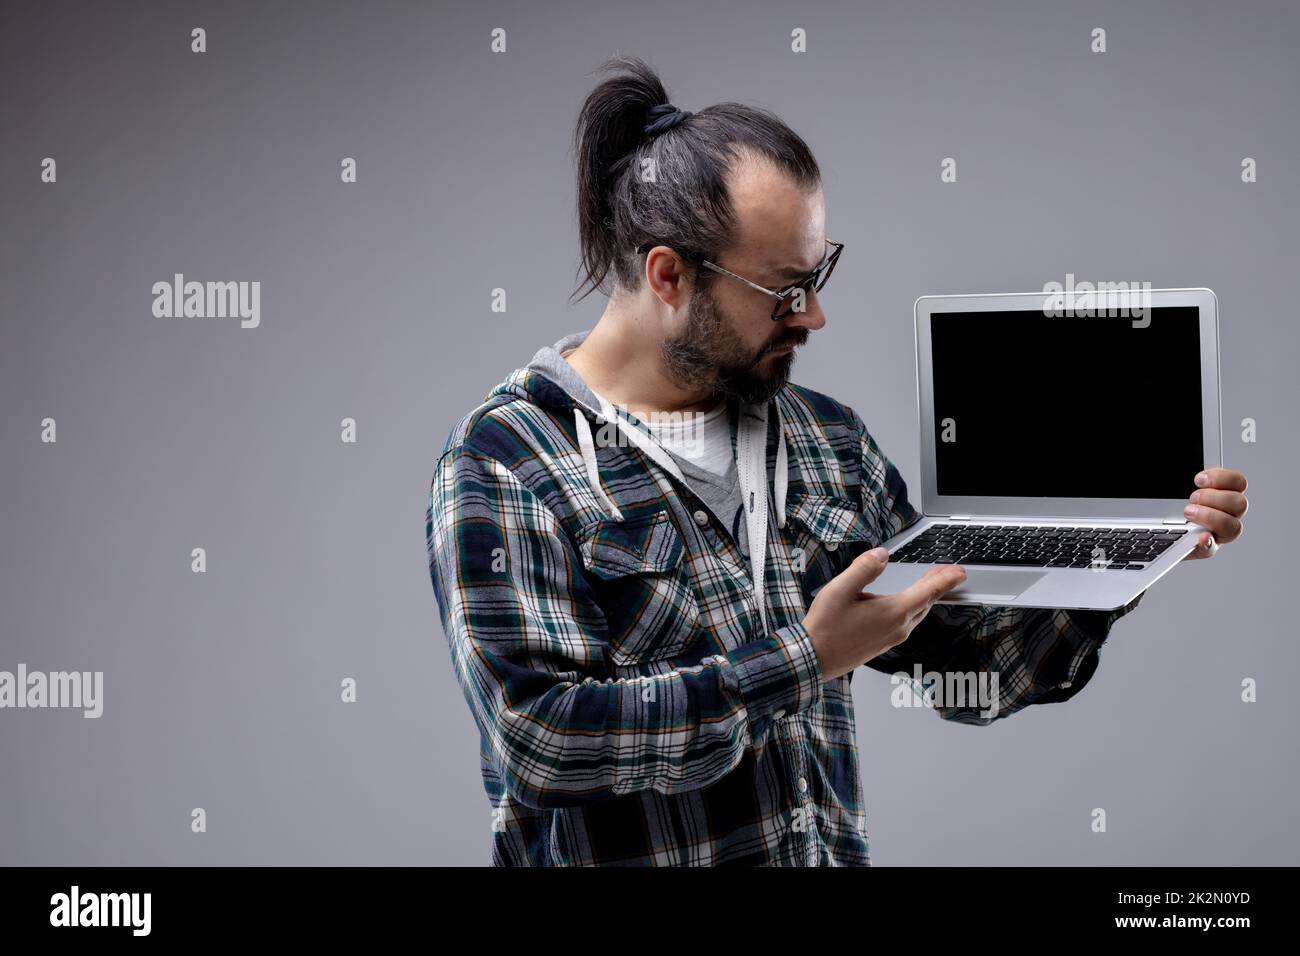 Ein Mann mit Pferdeschwanz und Brille, der einen Laptop in der Hand hat Stockfoto